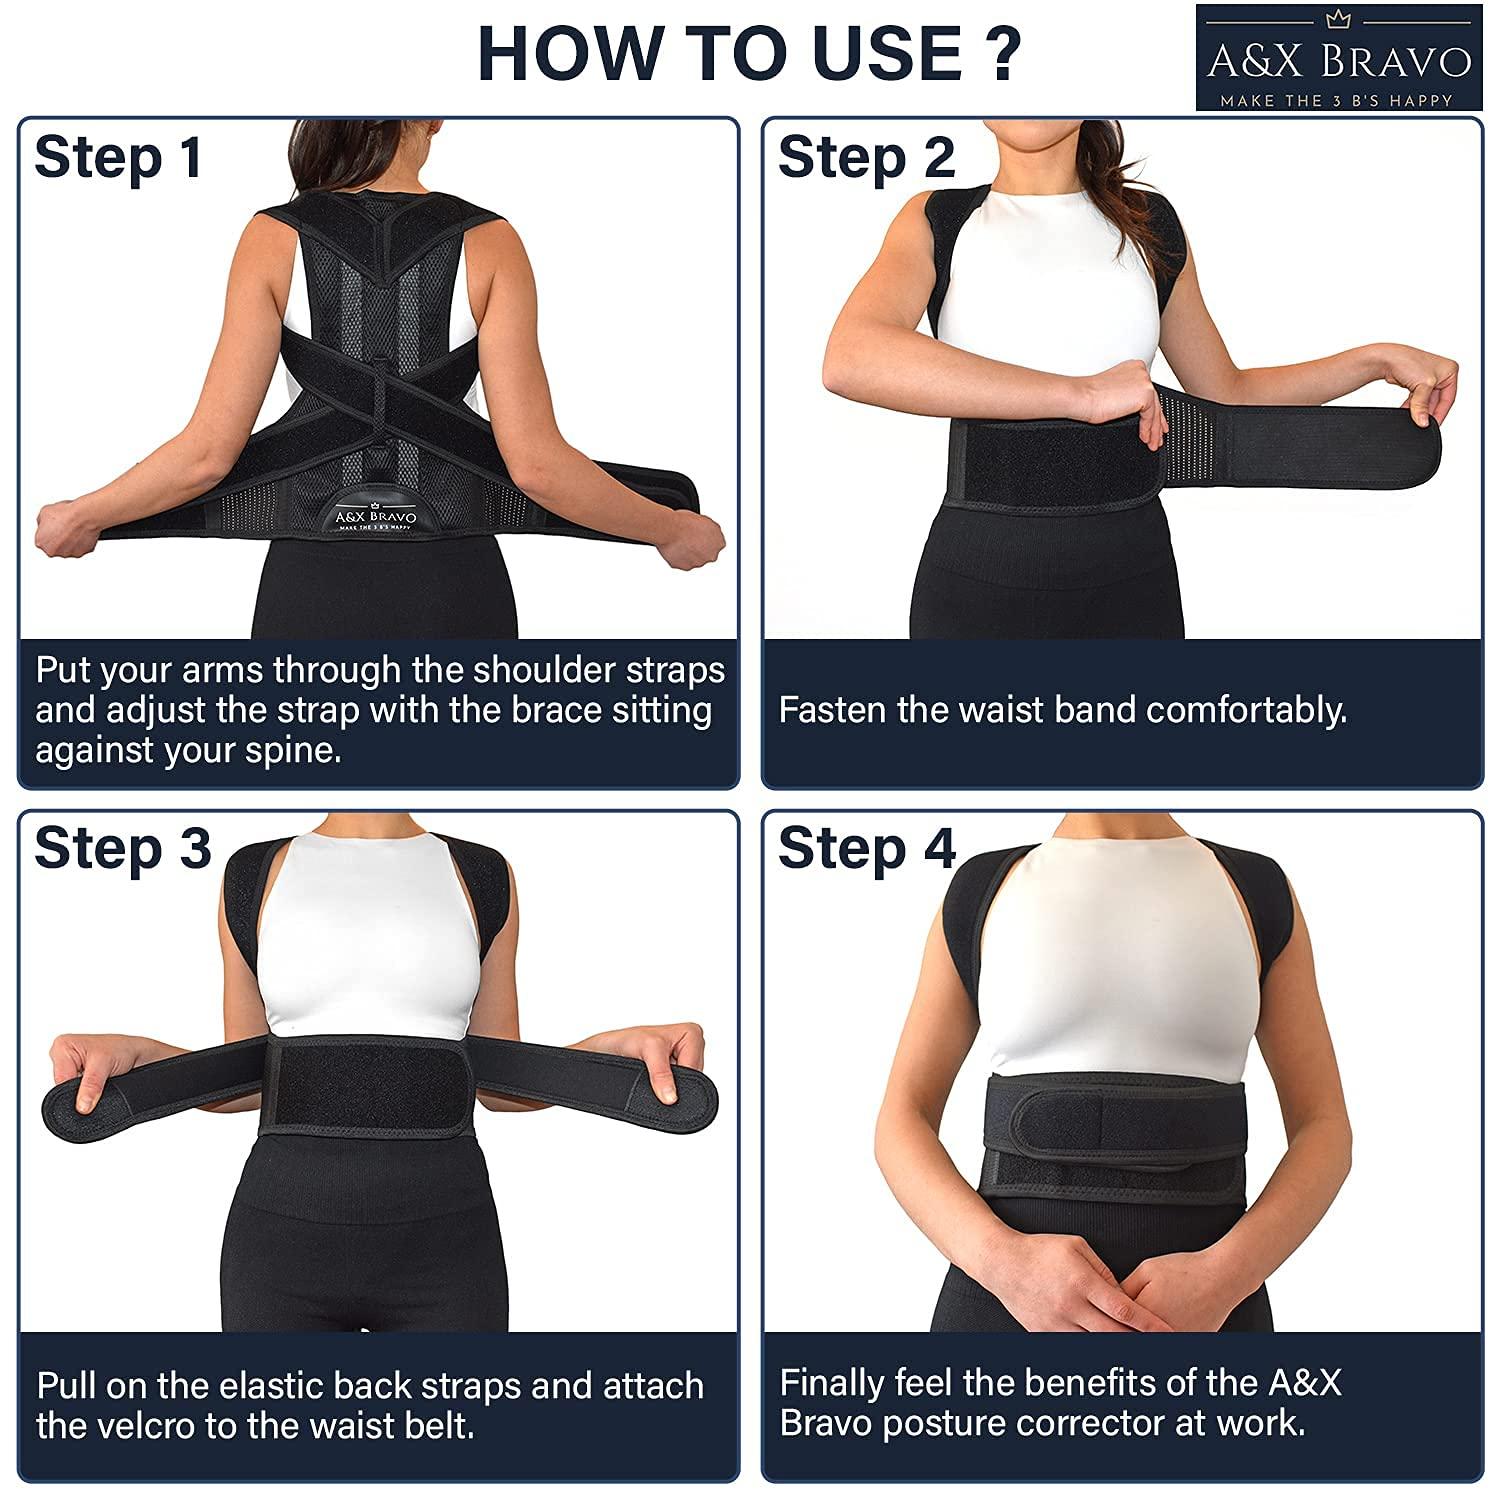 Posture Corrector Super Support Full Back Shoulder Brace Belt Band For Men  Women